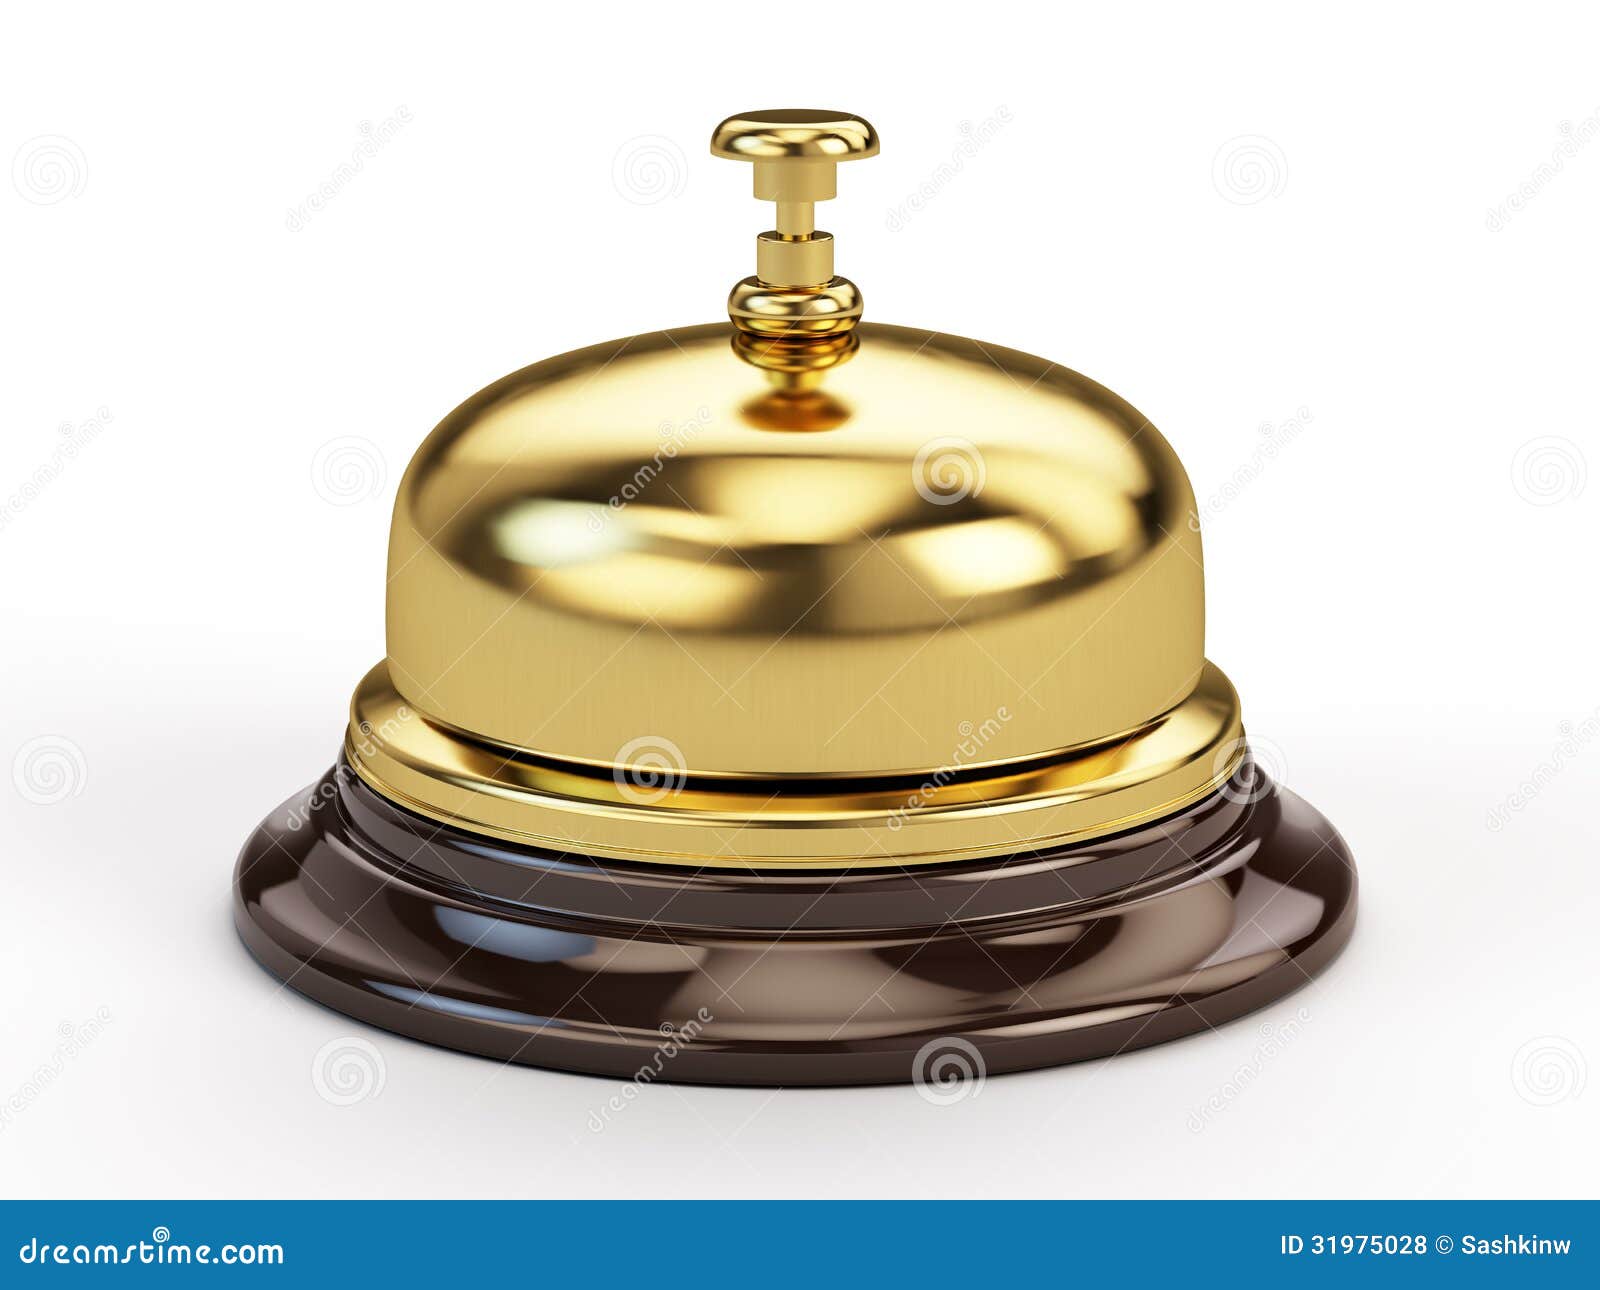 7x4cm Small Hand Held servicio Bell-Escuela campana campana de recepción campana de cena 